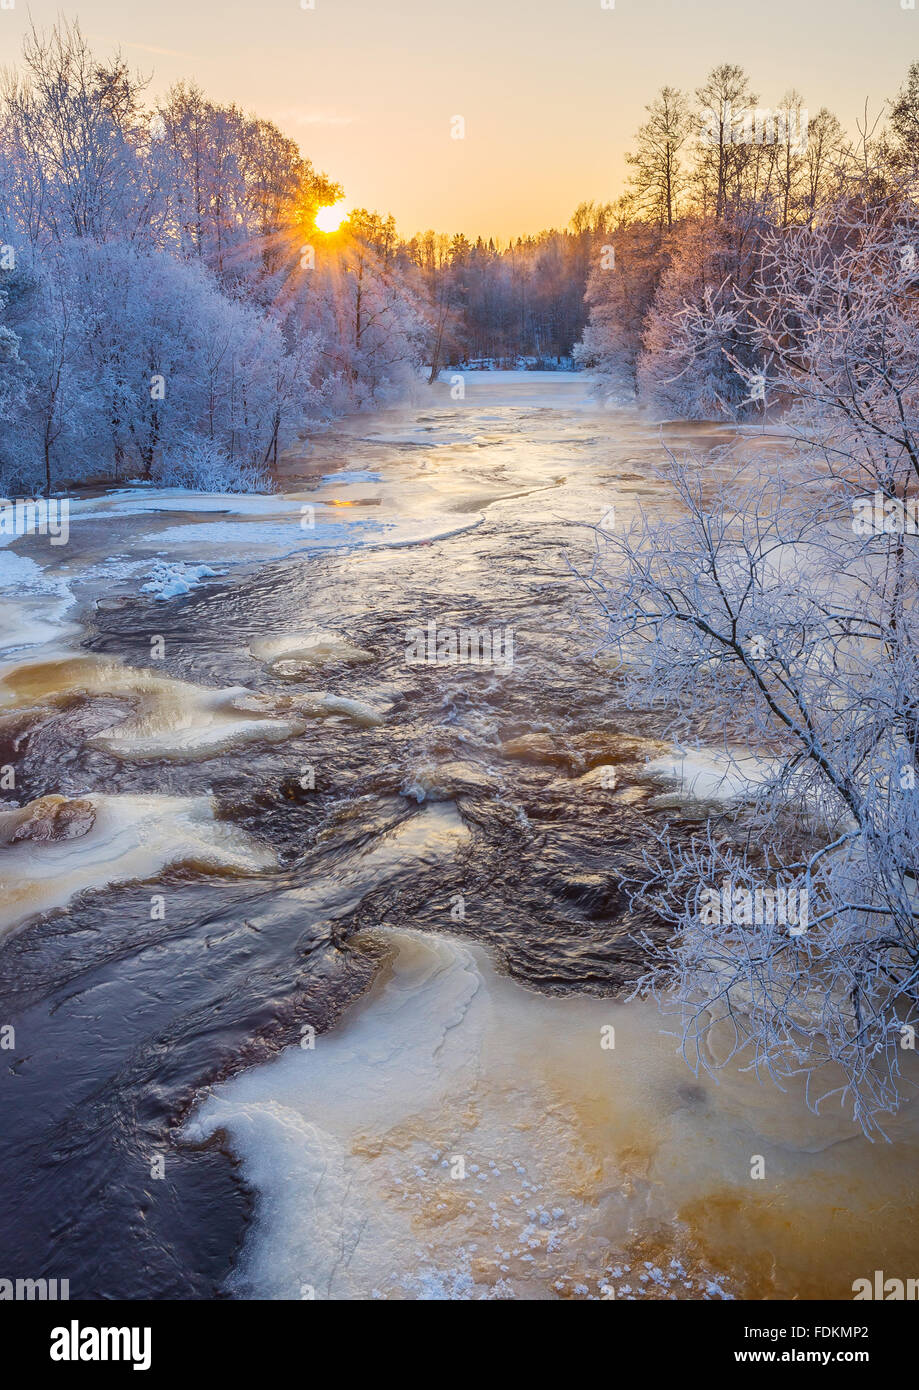 Sunrise in cold winter river landscape Stock Photo